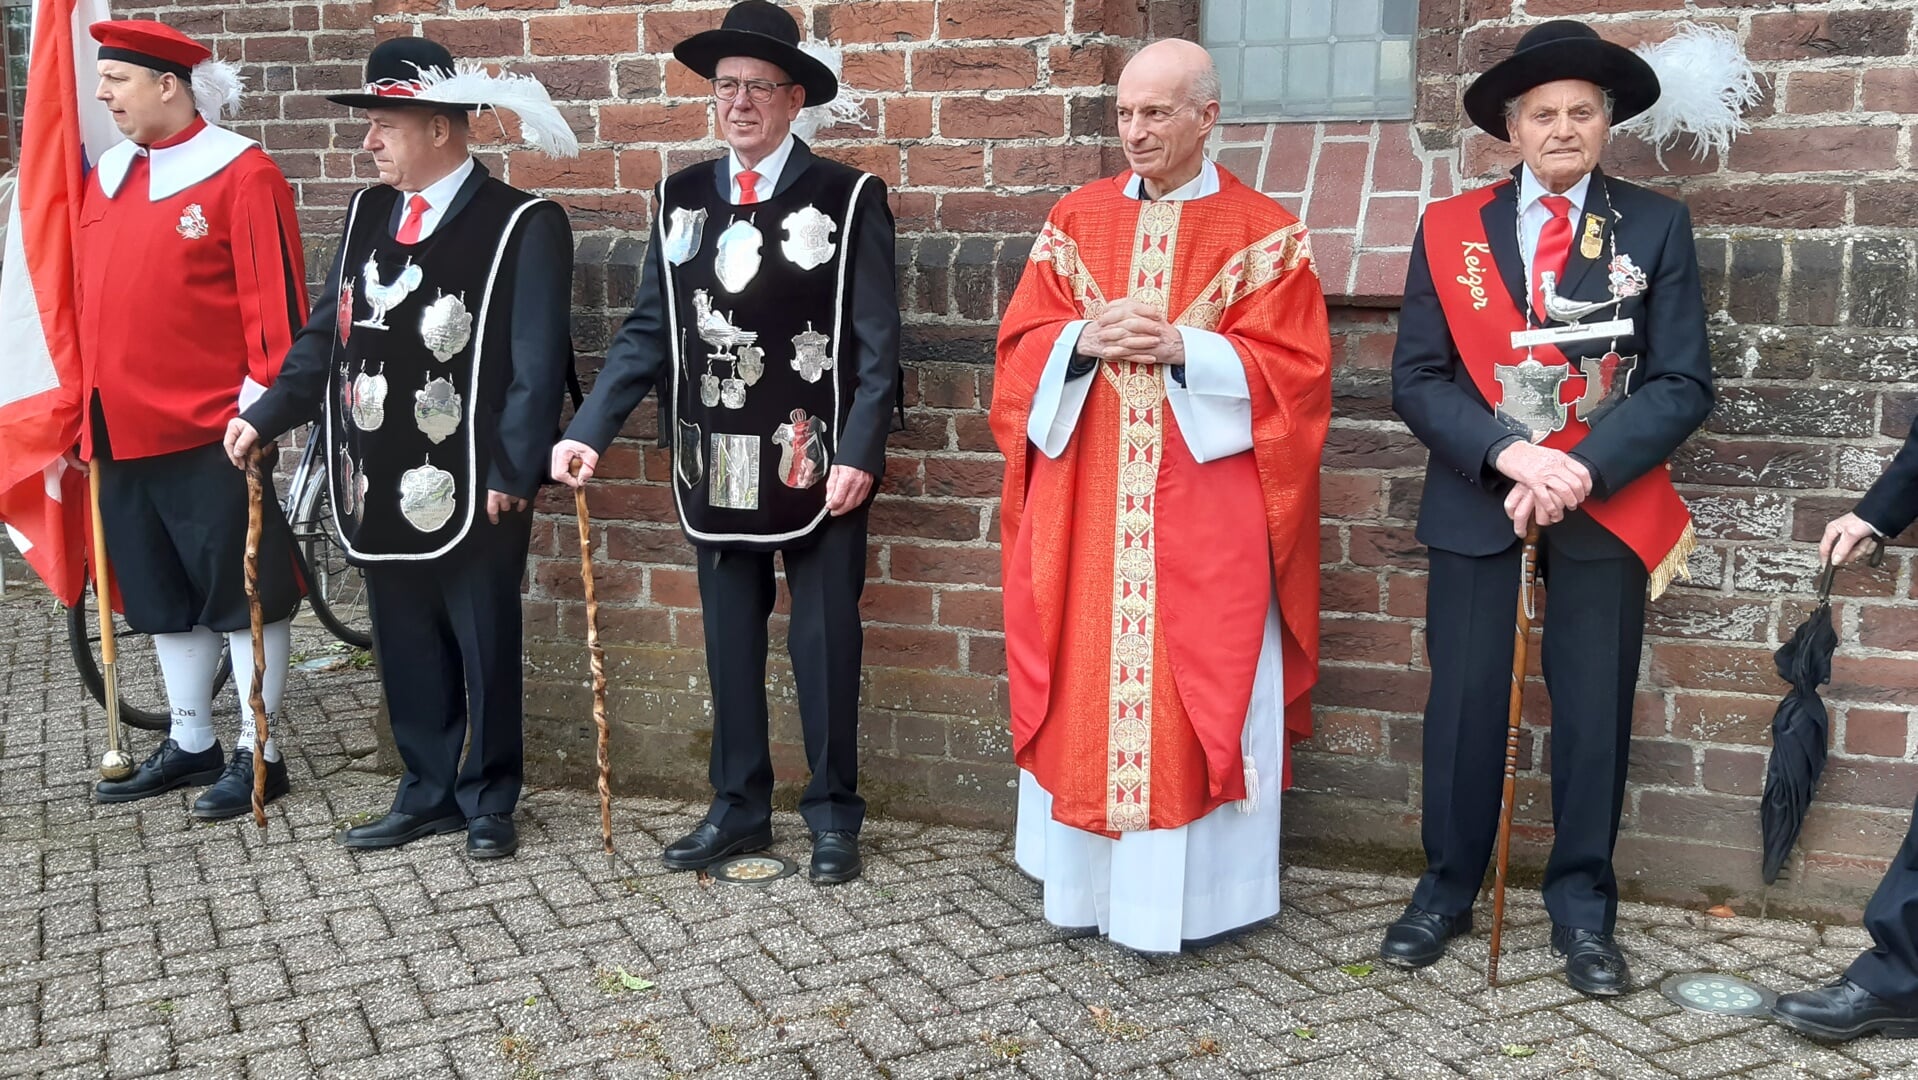 De hernieuwde eed van trouw aan het kerkelijk gezag in de persoon van pastoor Sjef van der Maazen.